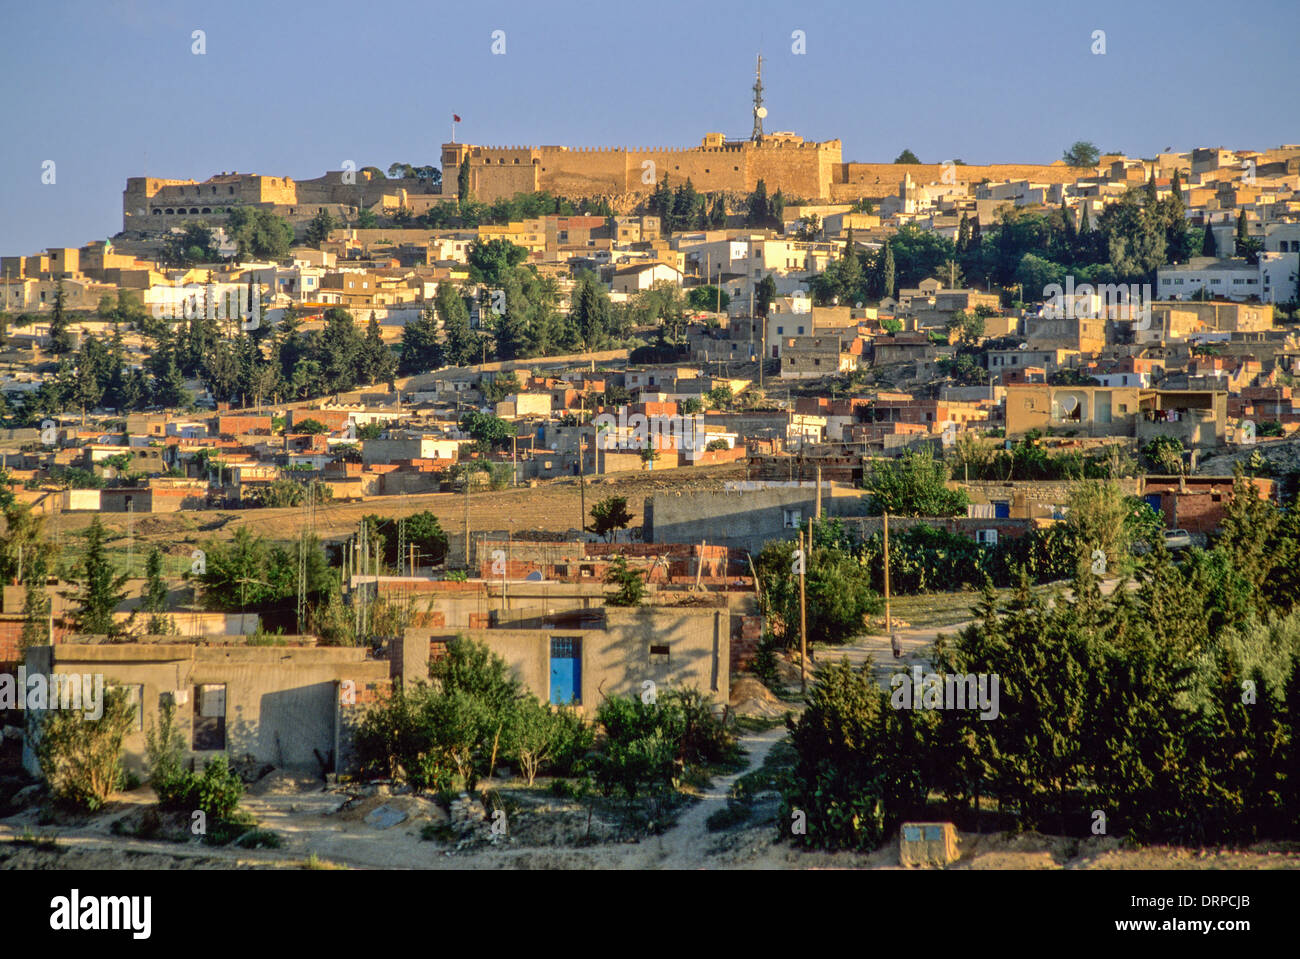 Tunesien, Le Kef. Die Zitadelle über der Stadt dominiert die Gegend. Hinweis Fernmeldeturm gegenübergestellt, Jahrhunderte alten Fort. Stockfoto